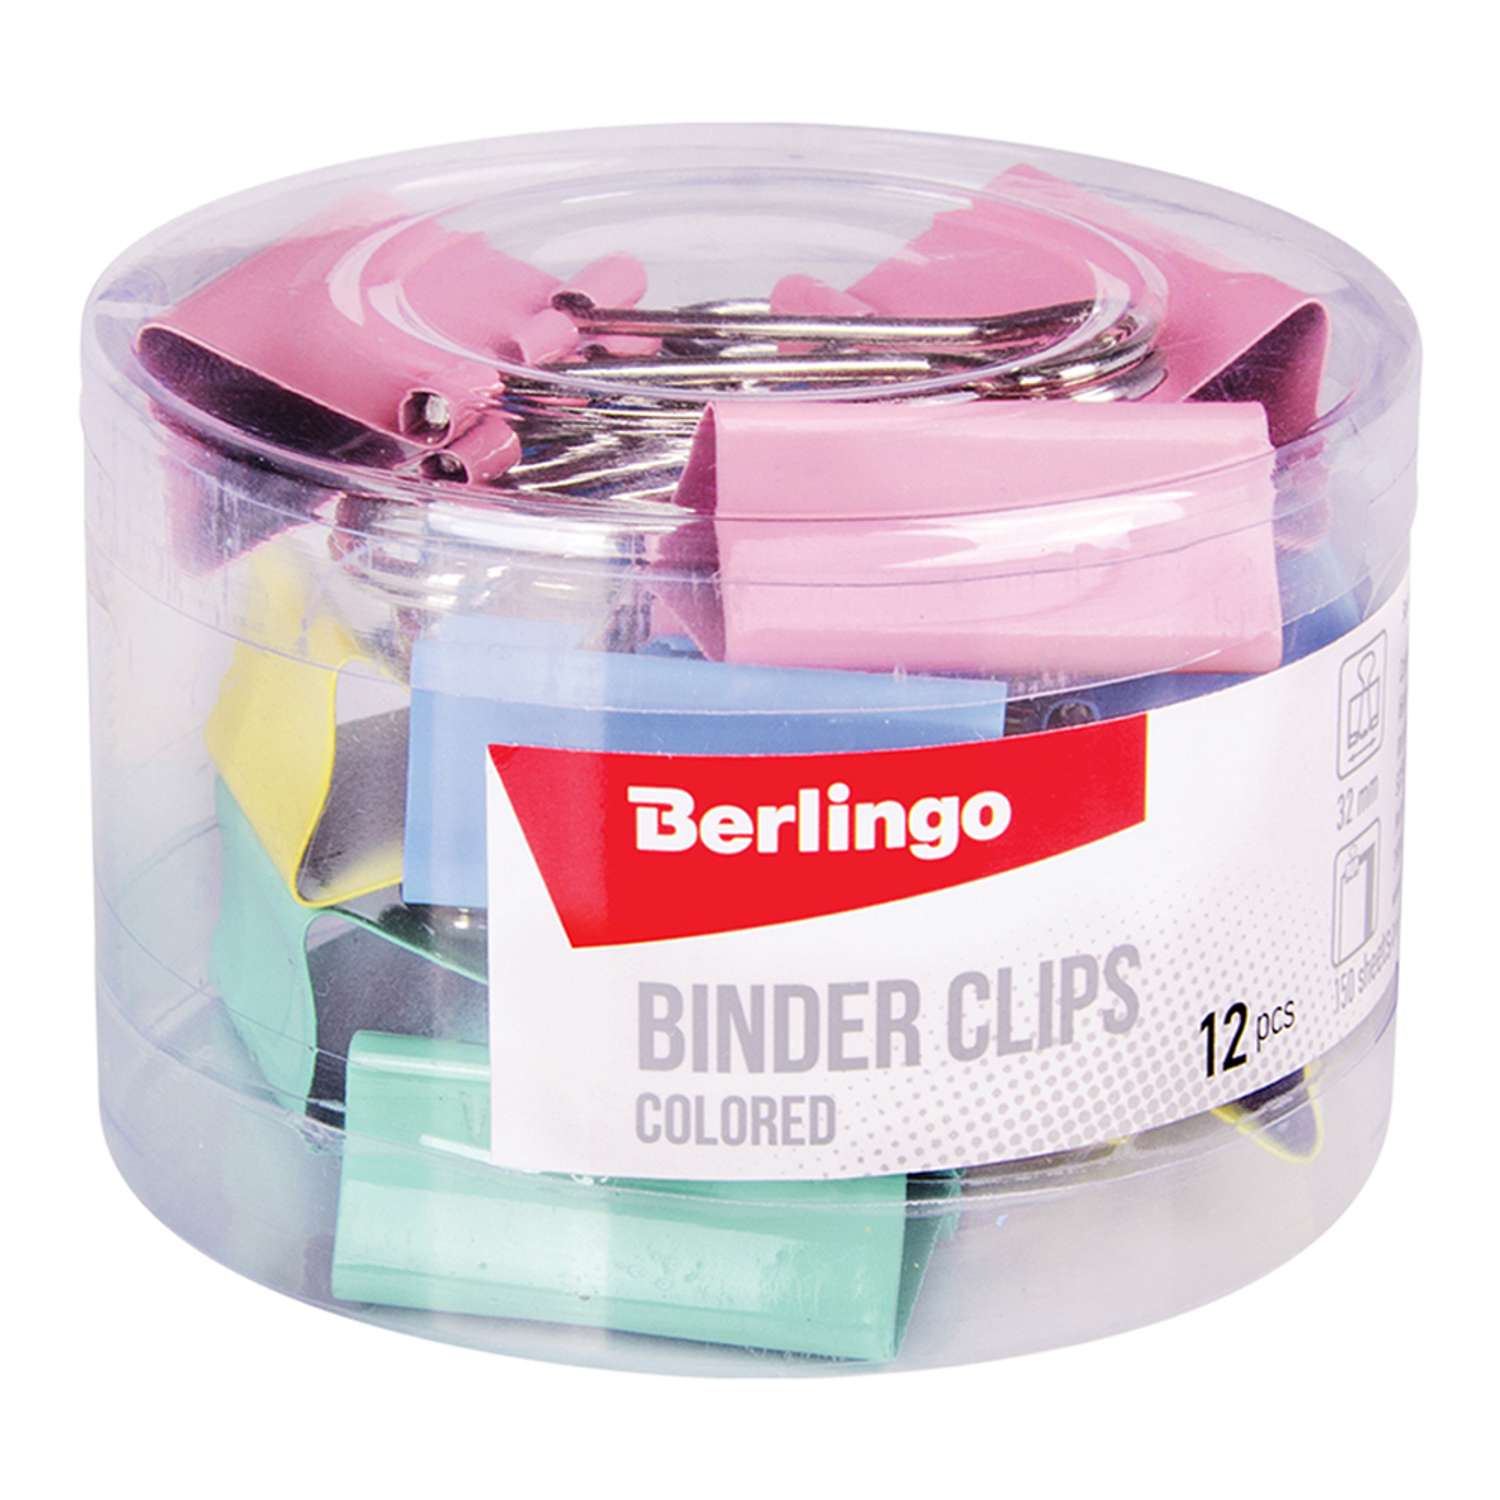 Зажимы для бумаг Berlingo 32 мм цветные пластиковый тубус набор 12 упаковок по 12 шт - фото 1